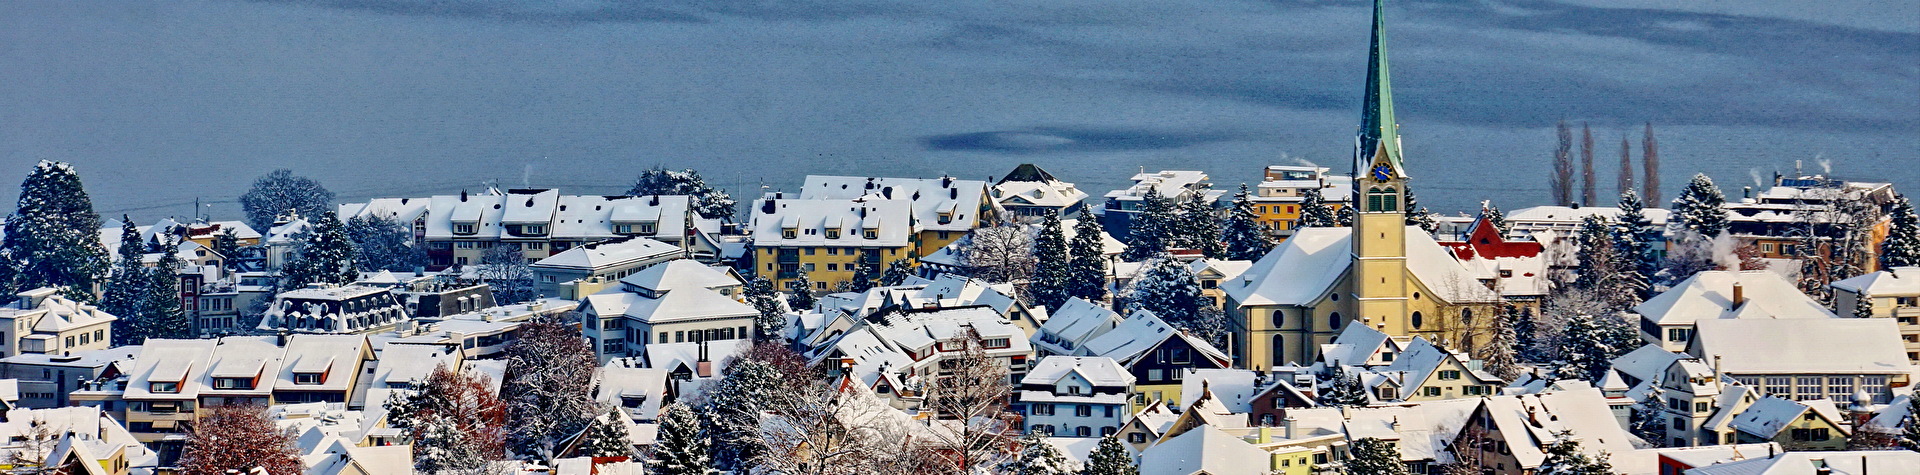 Wädenswil mit Schnee